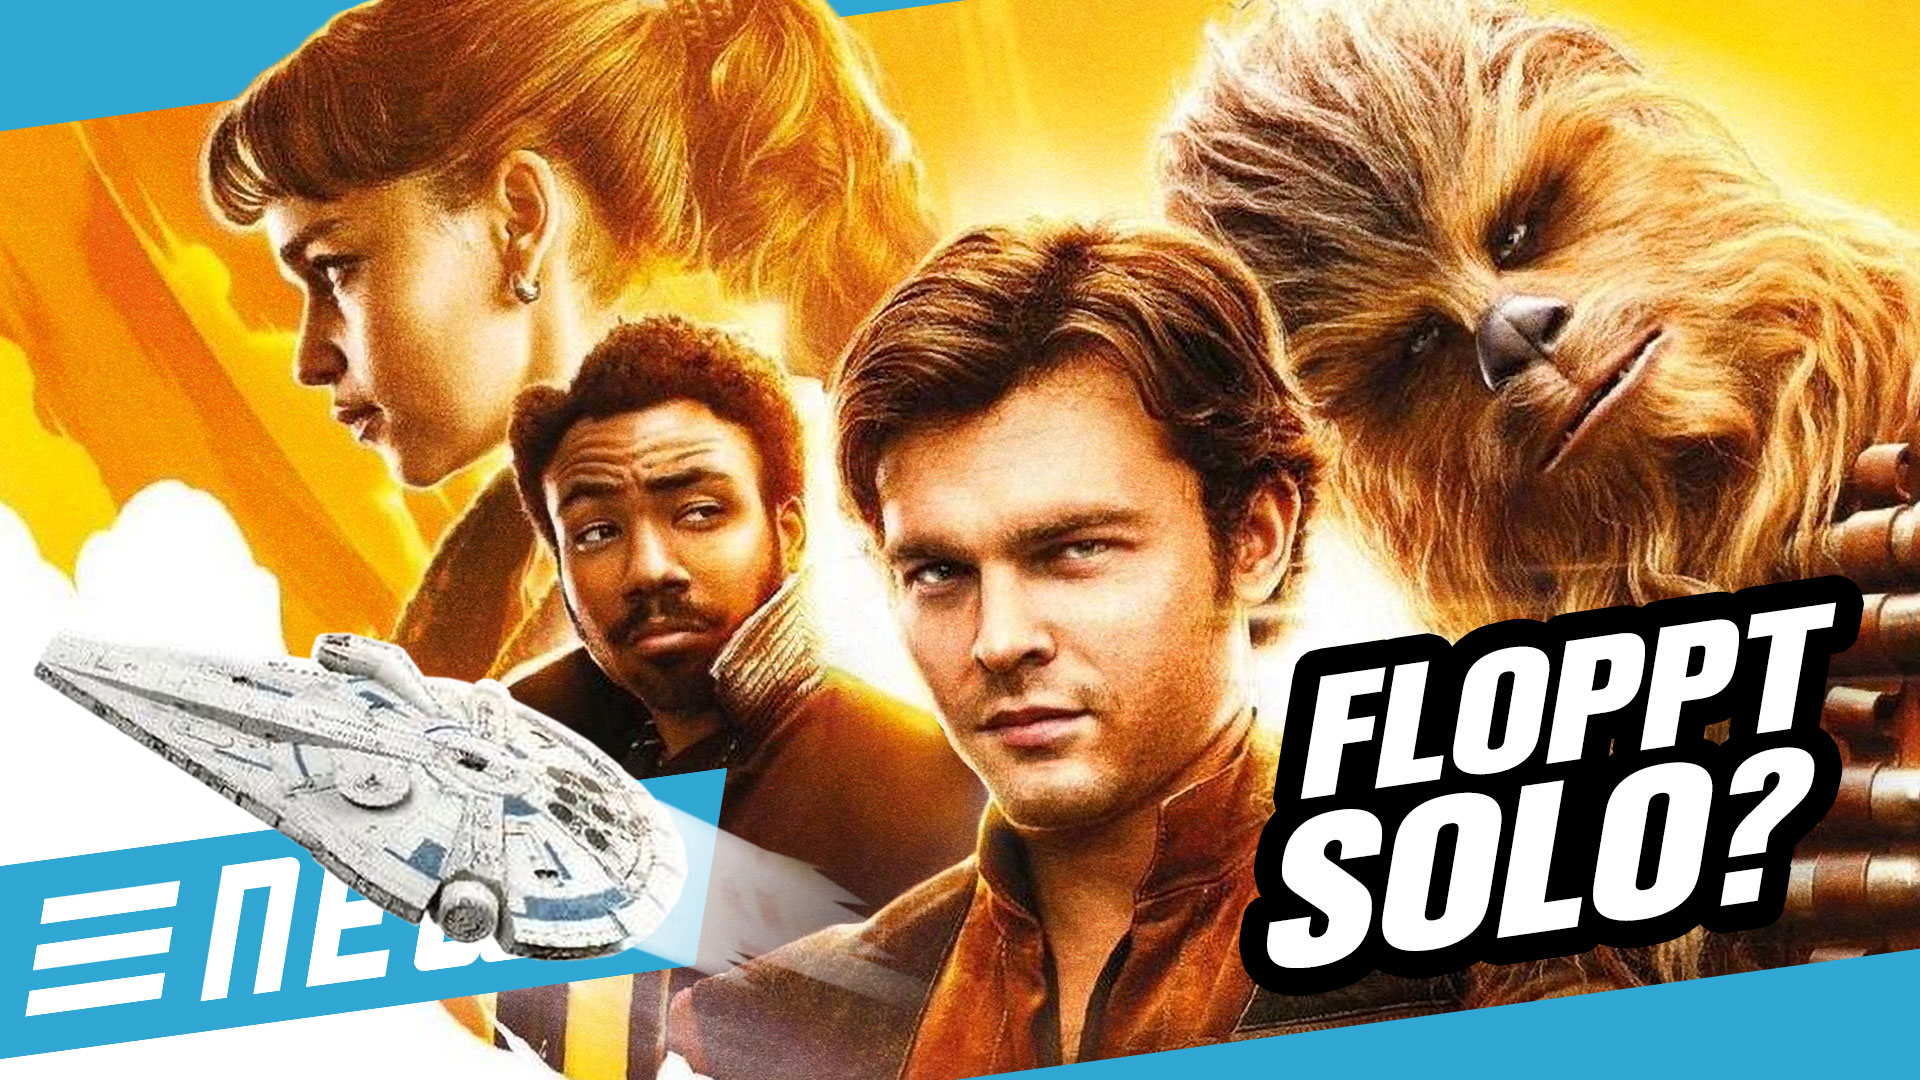 Nächster Star Wars: Disney rechnet mit Flop? - FLIPPS News